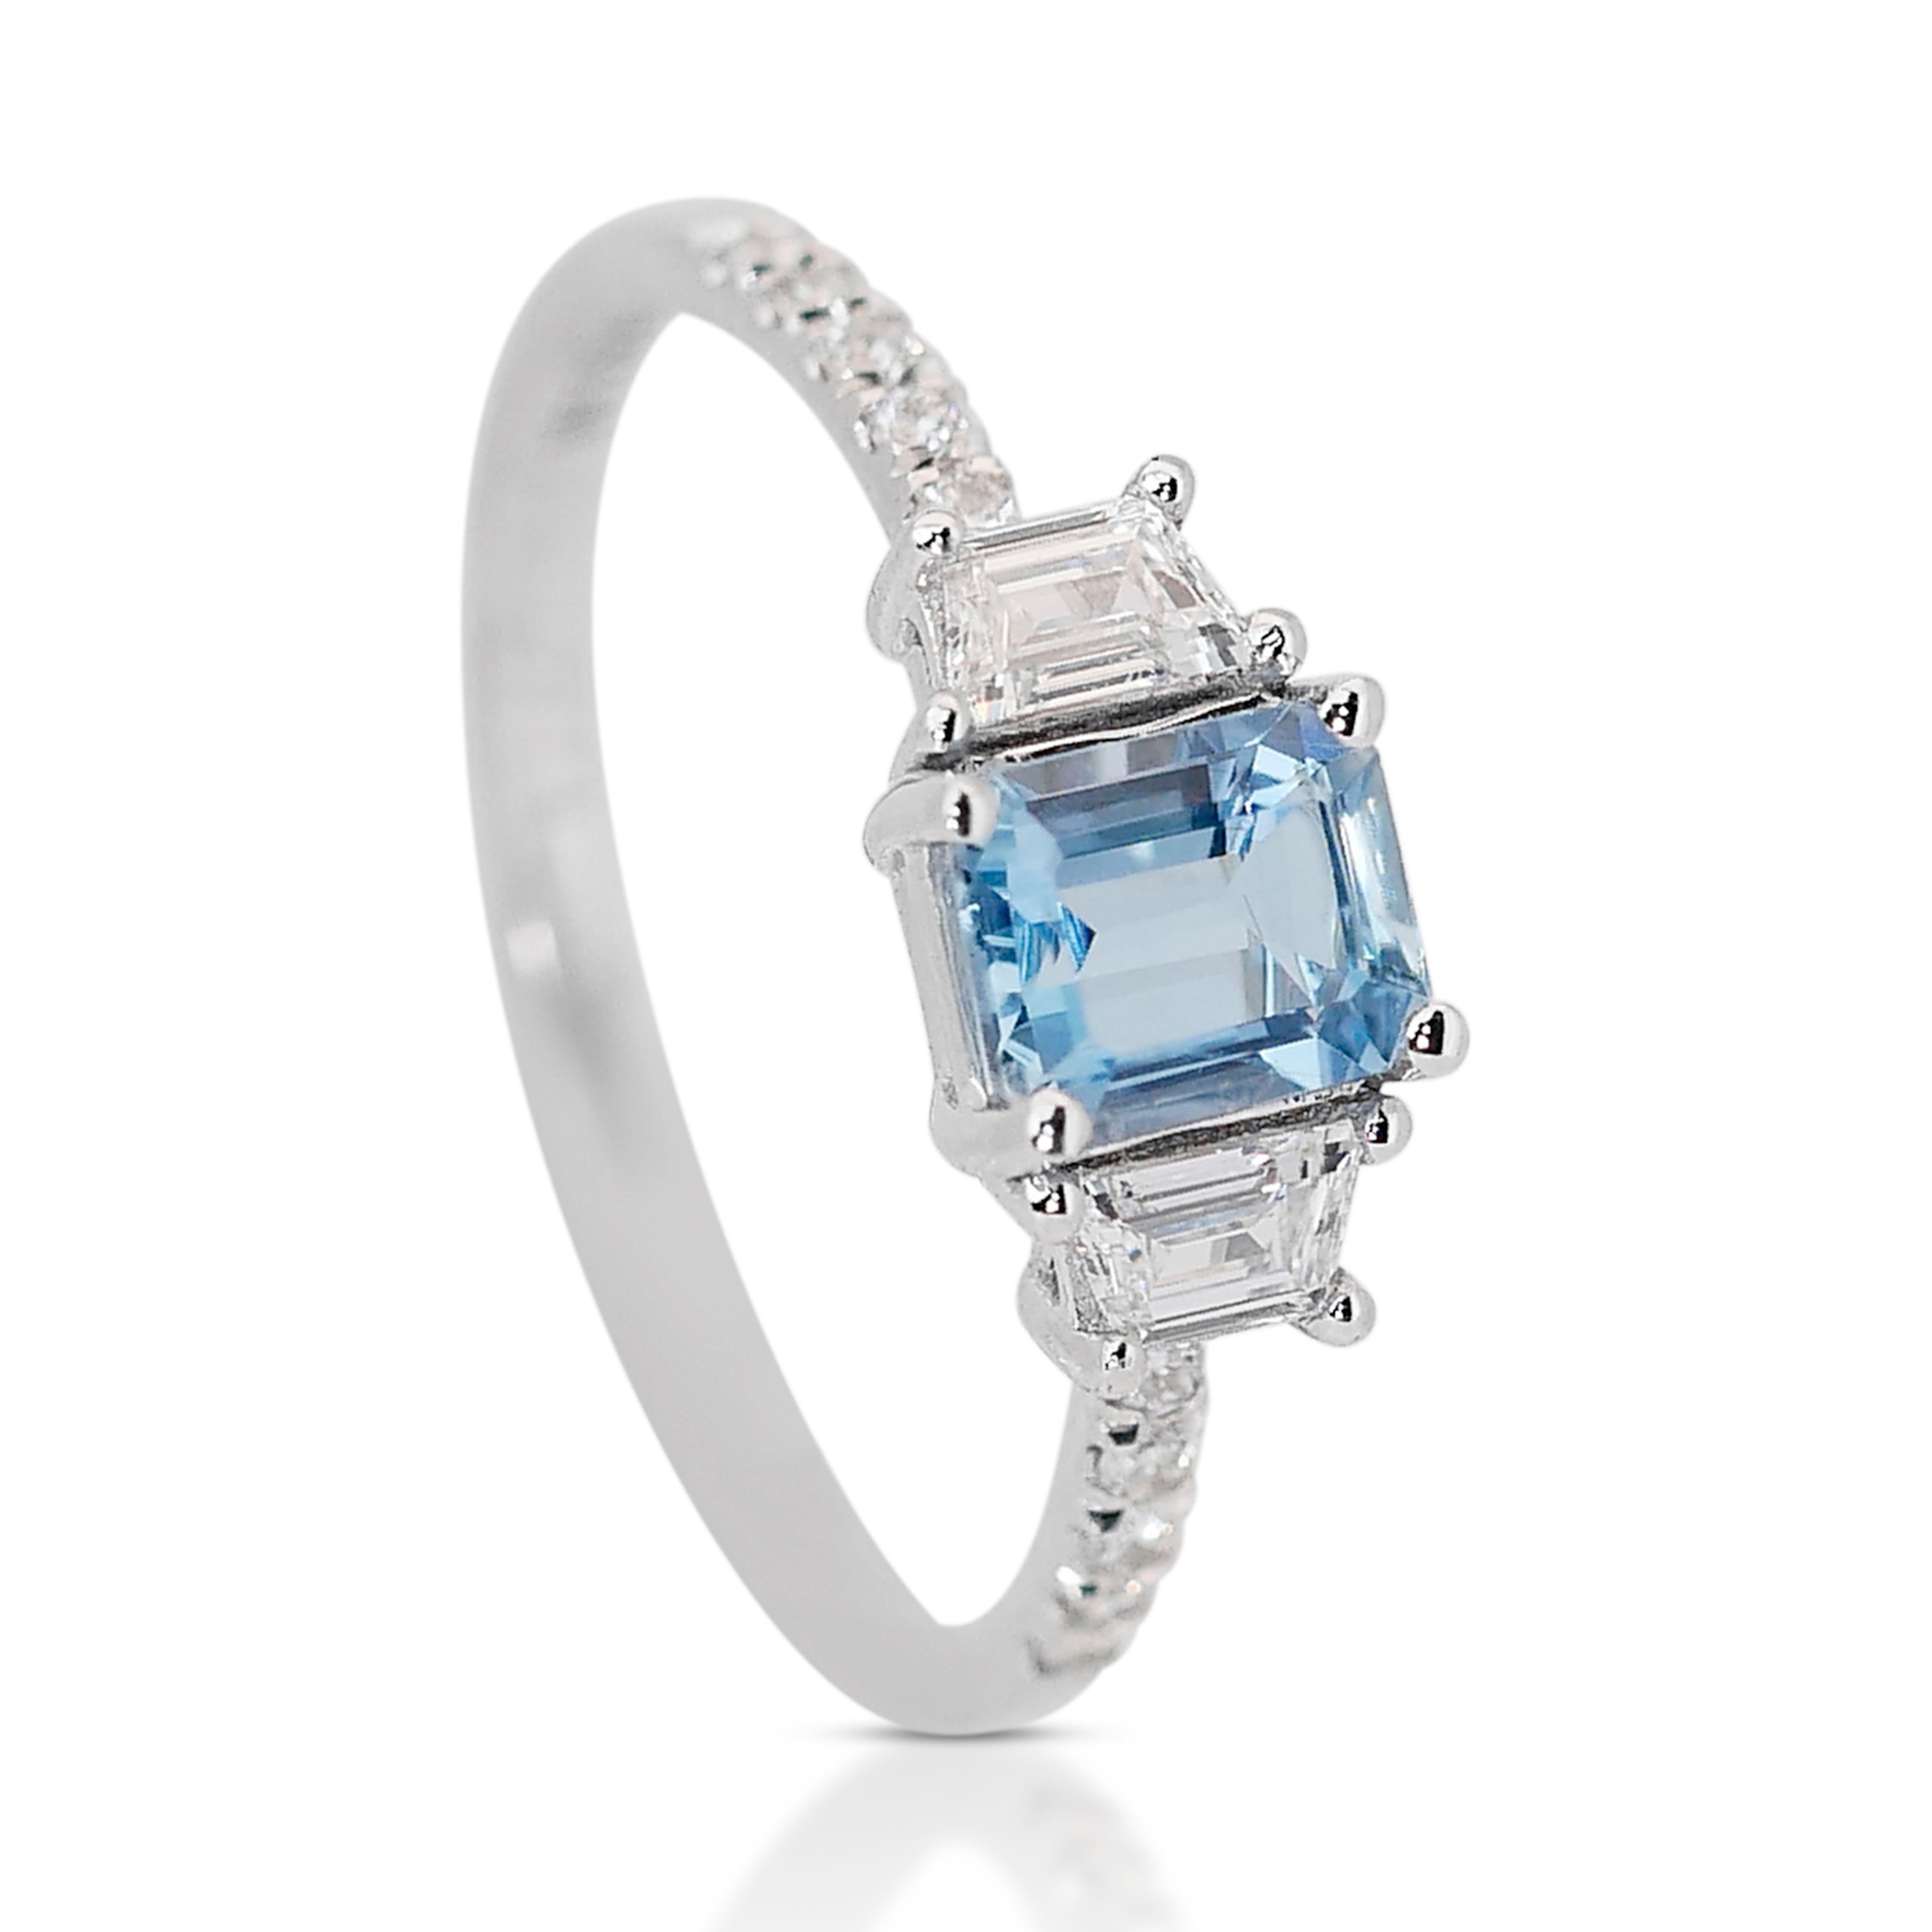 Emerald Cut Elegant 1.28ct Aquamarine and Diamonds 3-Stone Ring in 18k White Gold - IGI Cert For Sale